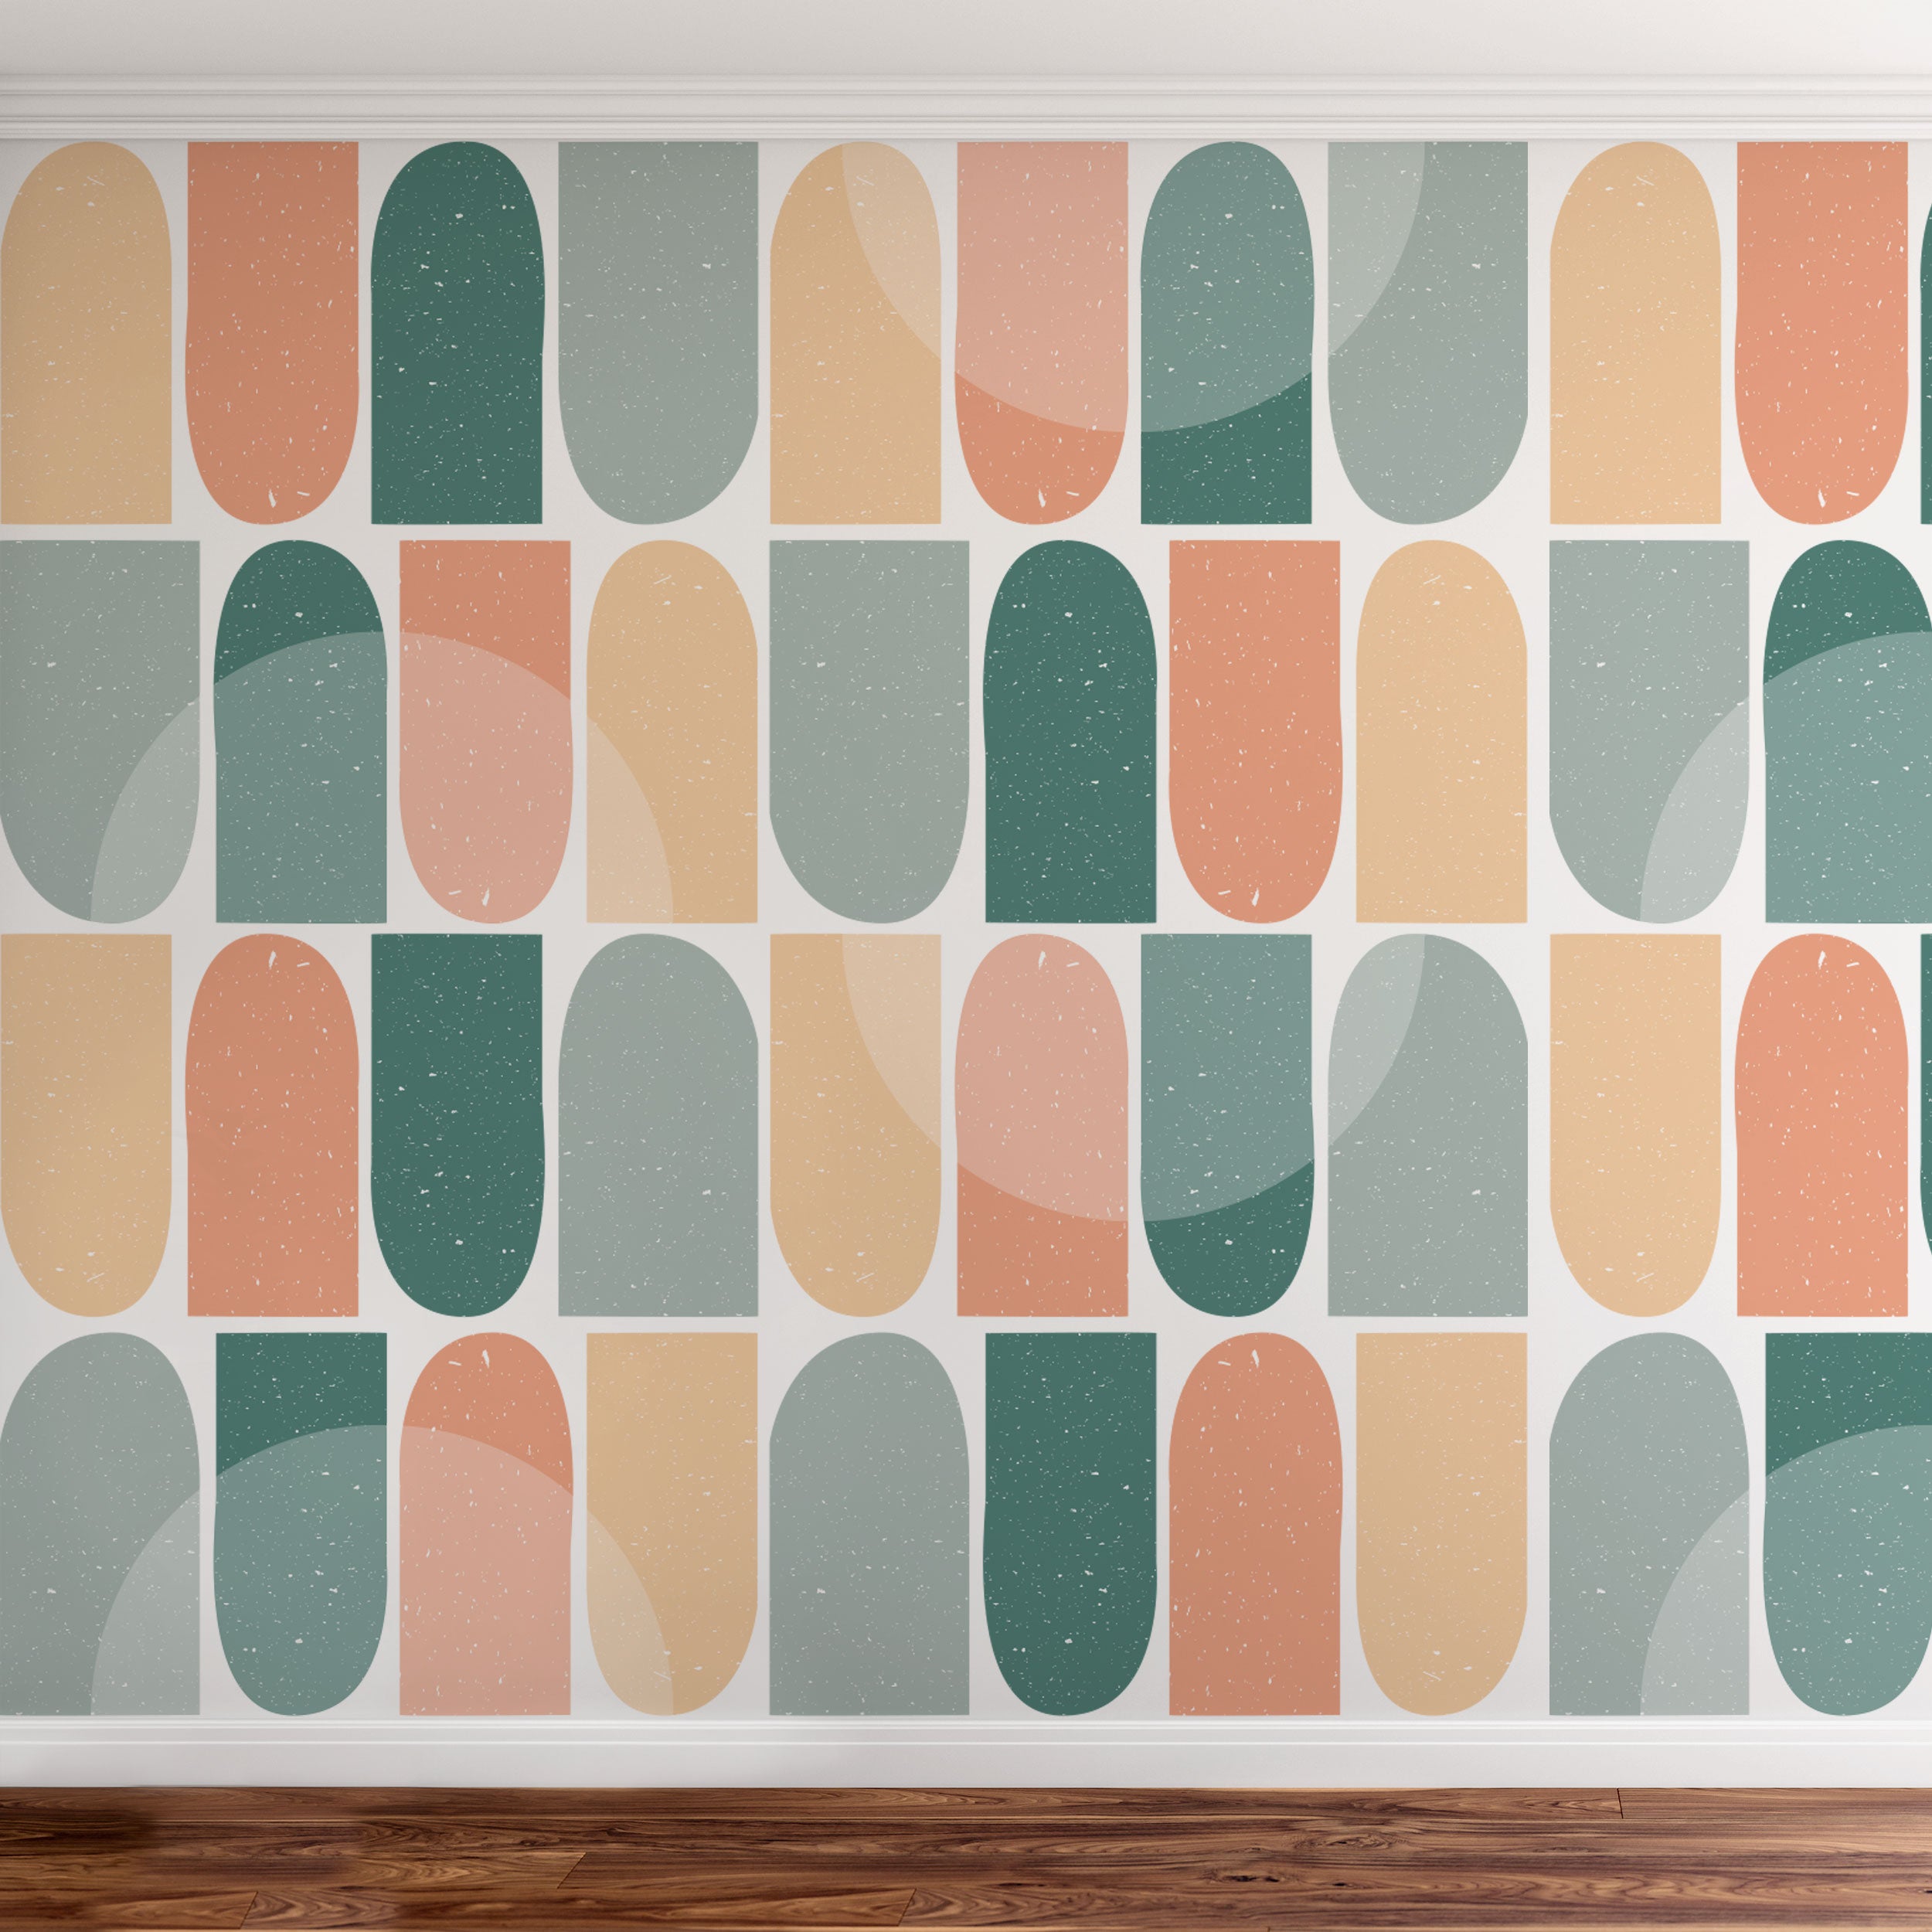 Shapes wallpaper